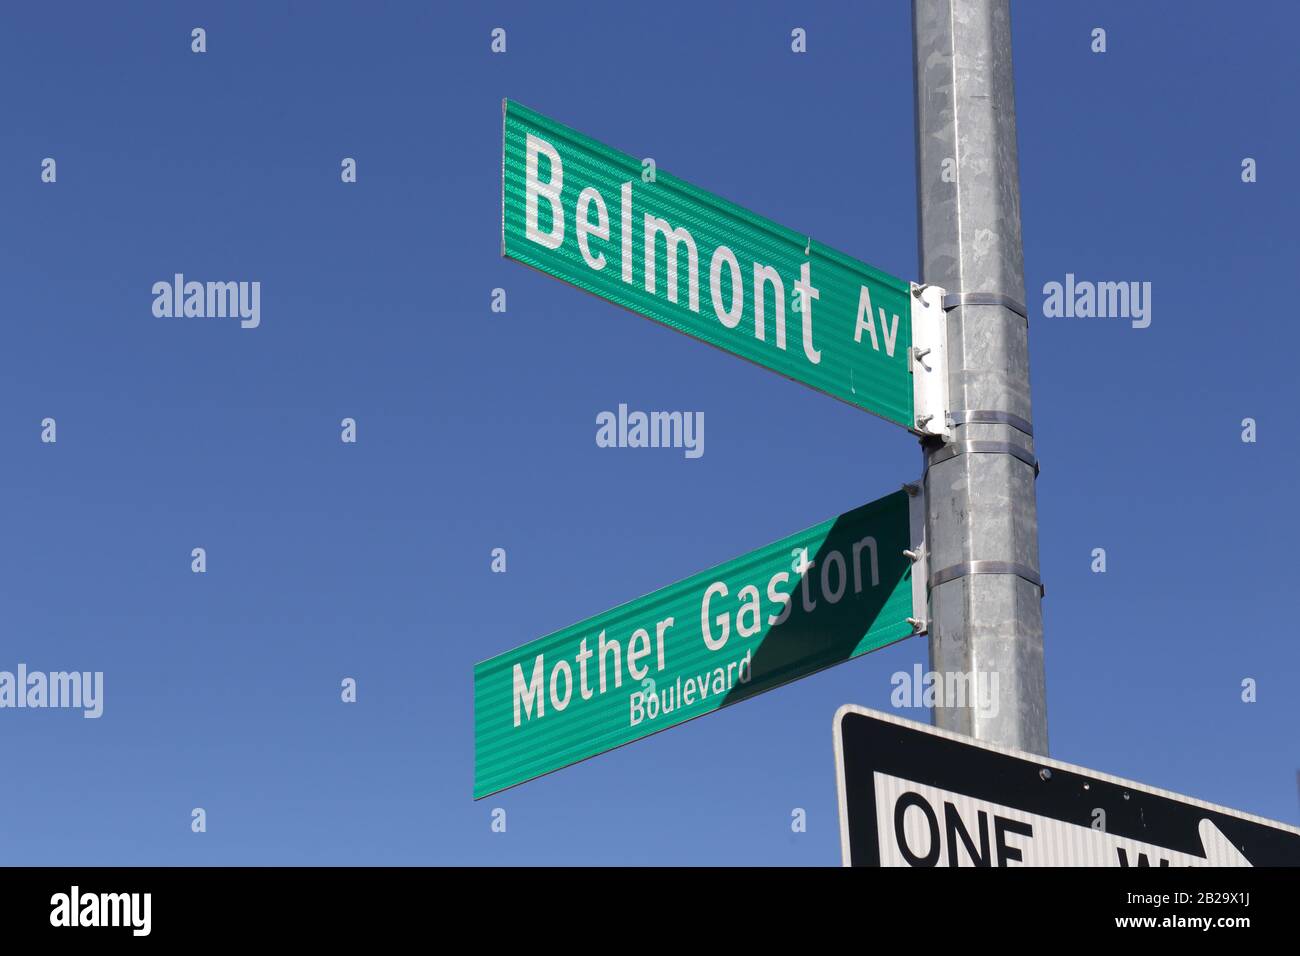 Die Straßenschilder Belmont Ave und Mother Gaston Blvd befinden sich im Stadtteil Brownsville in Brooklyn, New York, NY Stockfoto